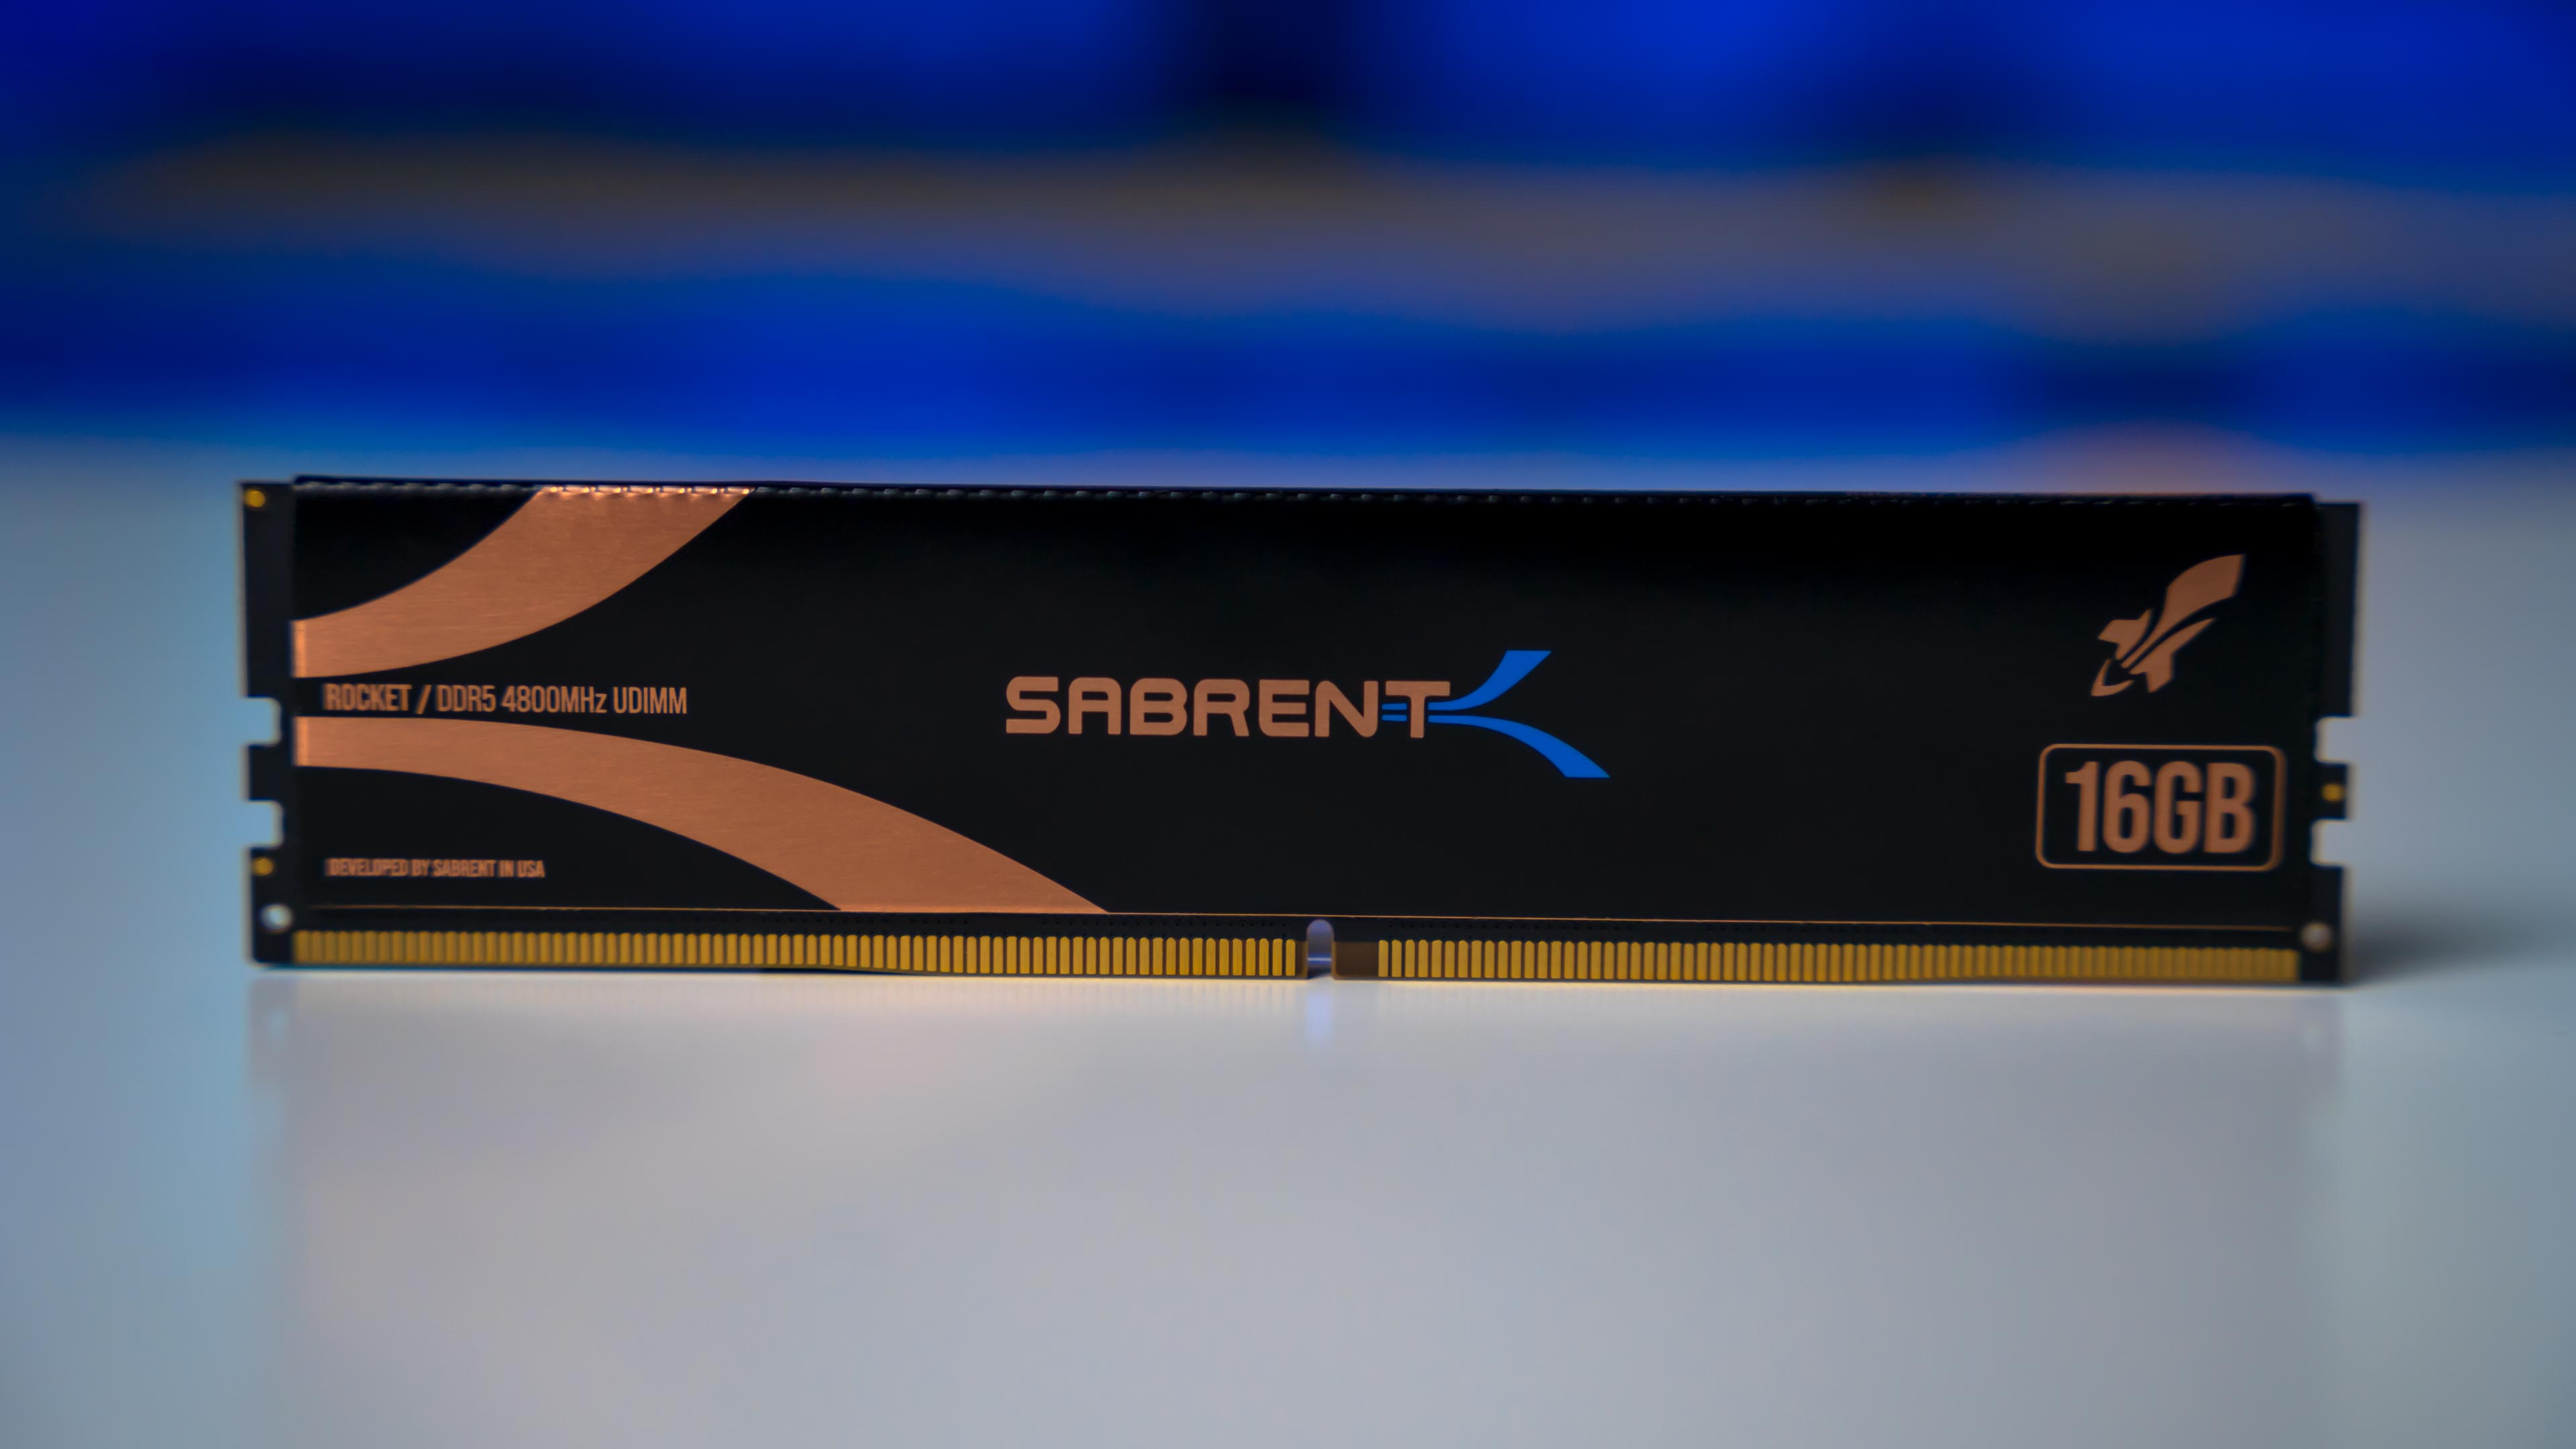 Sabrent Rocket DDR5 4800Mhz Memory (1)